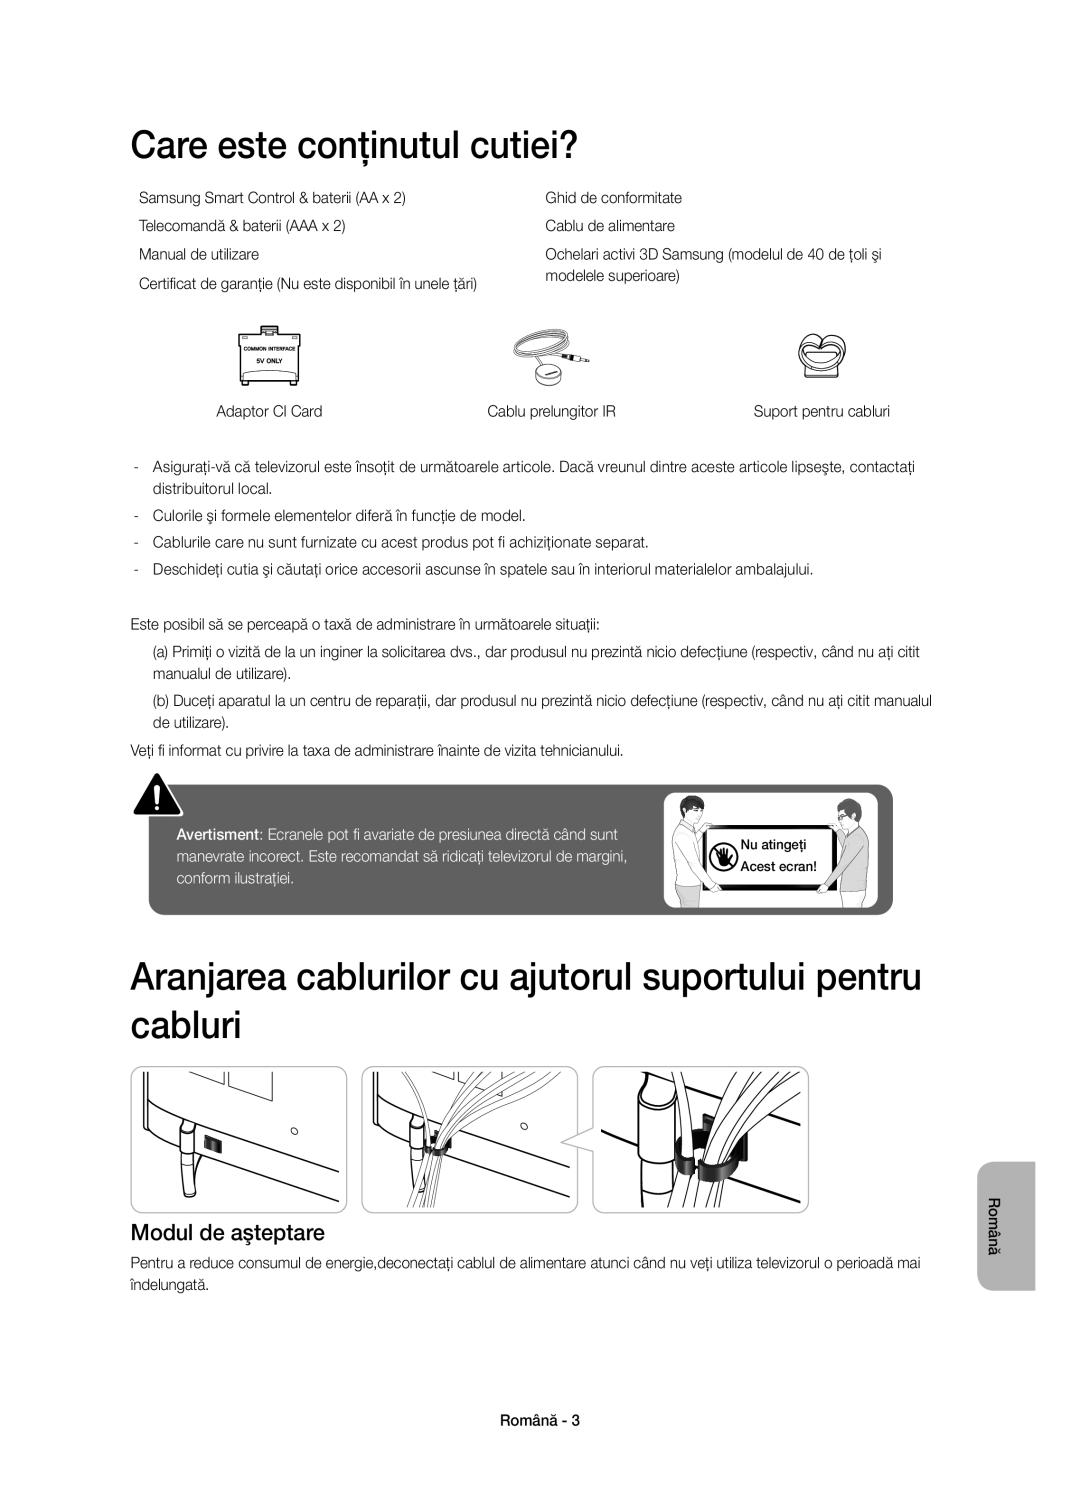 Samsung UE48H6410SUXXH manual Care este conţinutul cutiei?, Aranjarea cablurilor cu ajutorul suportului pentru cabluri 